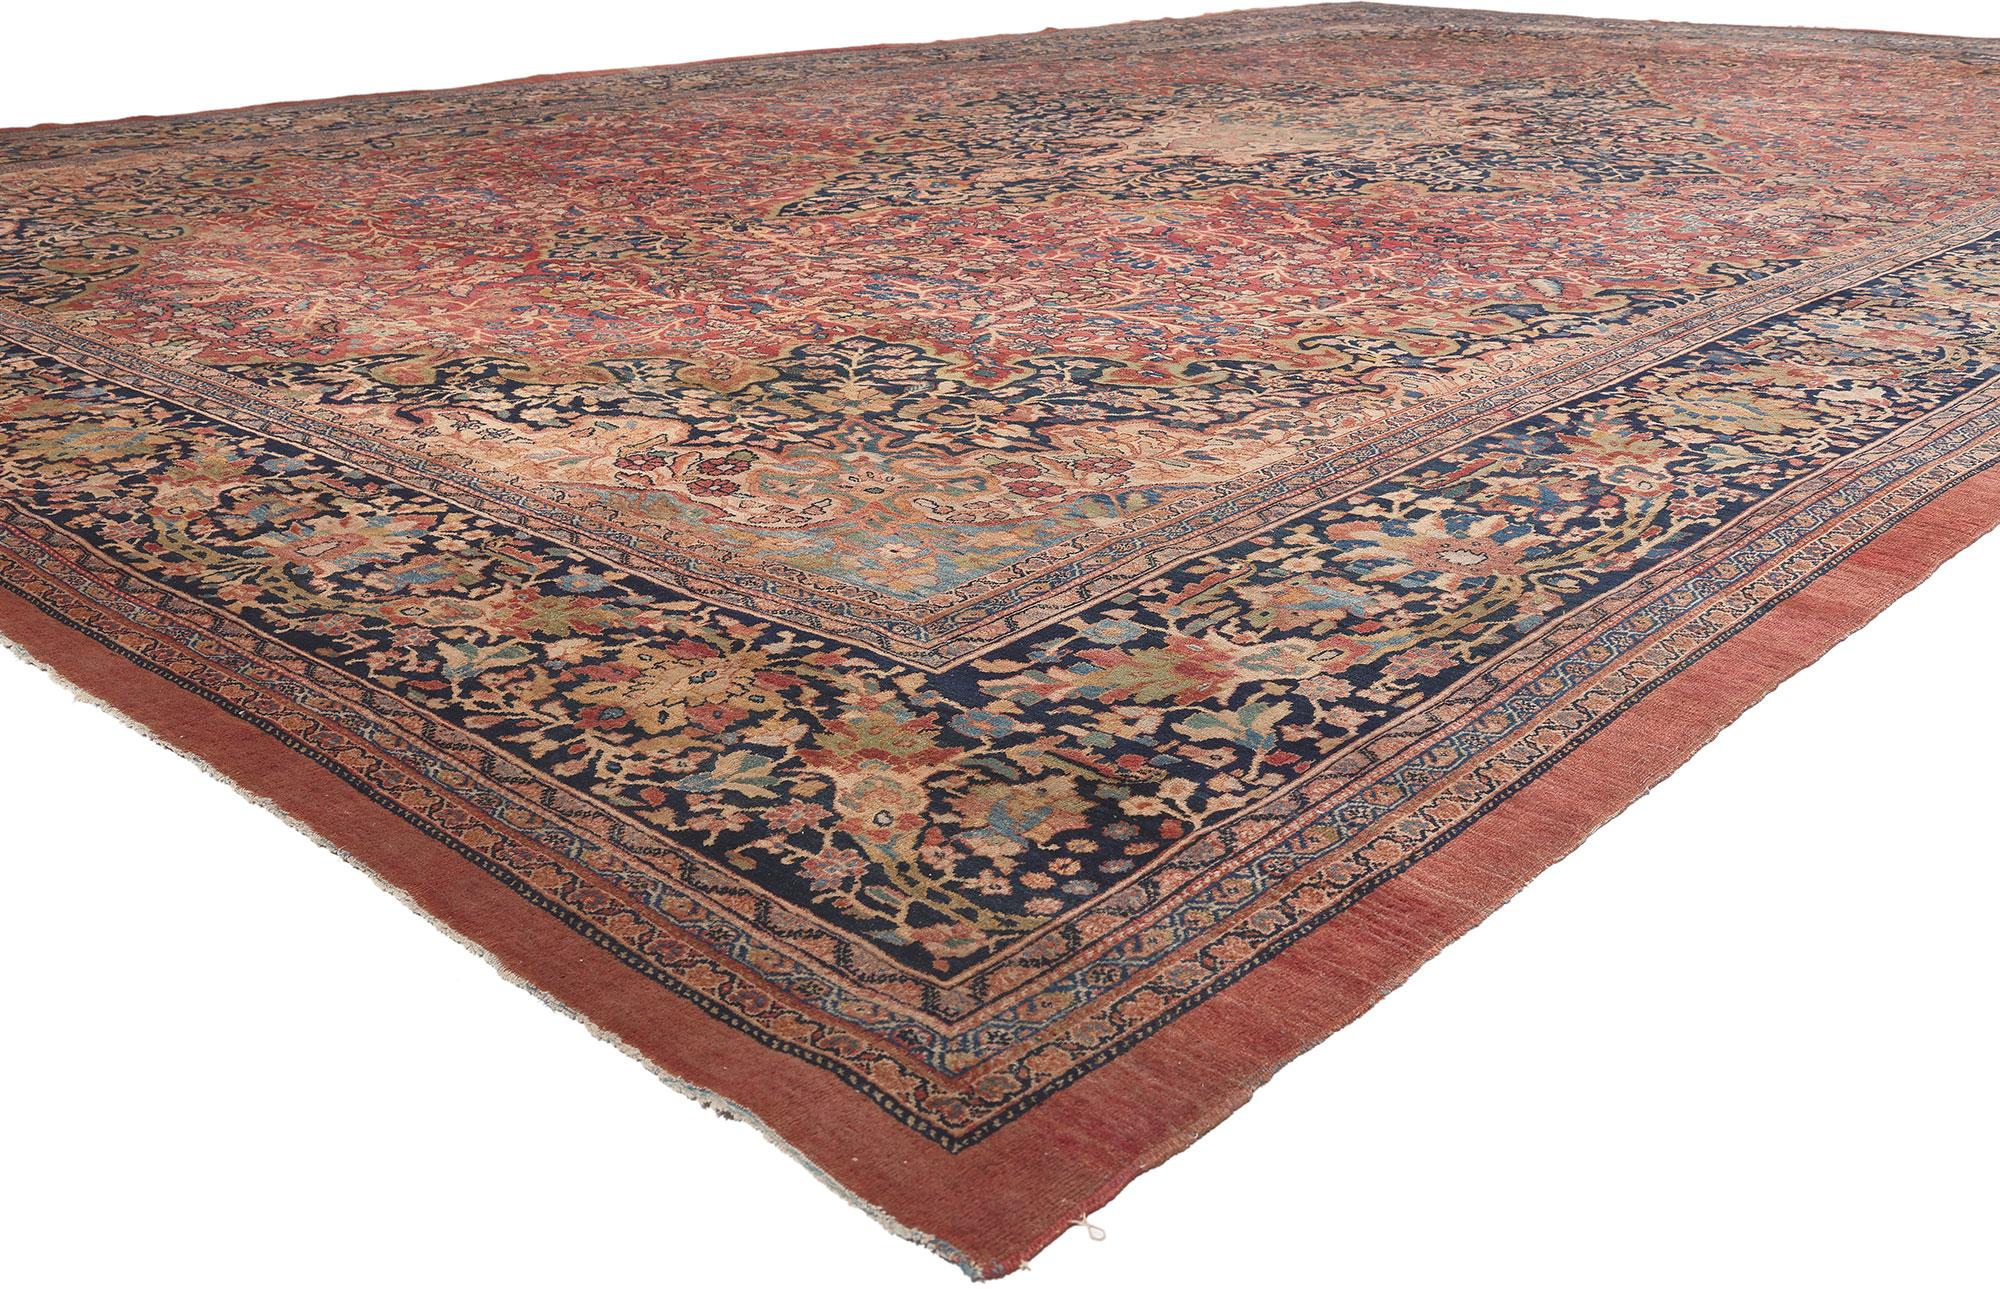 78651 Tapis persan Farahan surdimensionné, 13'10 x 21'07.
Représentant une catégorie de tapis persans haut de gamme et un signe de richesse, ce tapis persan ancien de Farahan est une vision captivante de la beauté du tissage. Les détails élaborés et